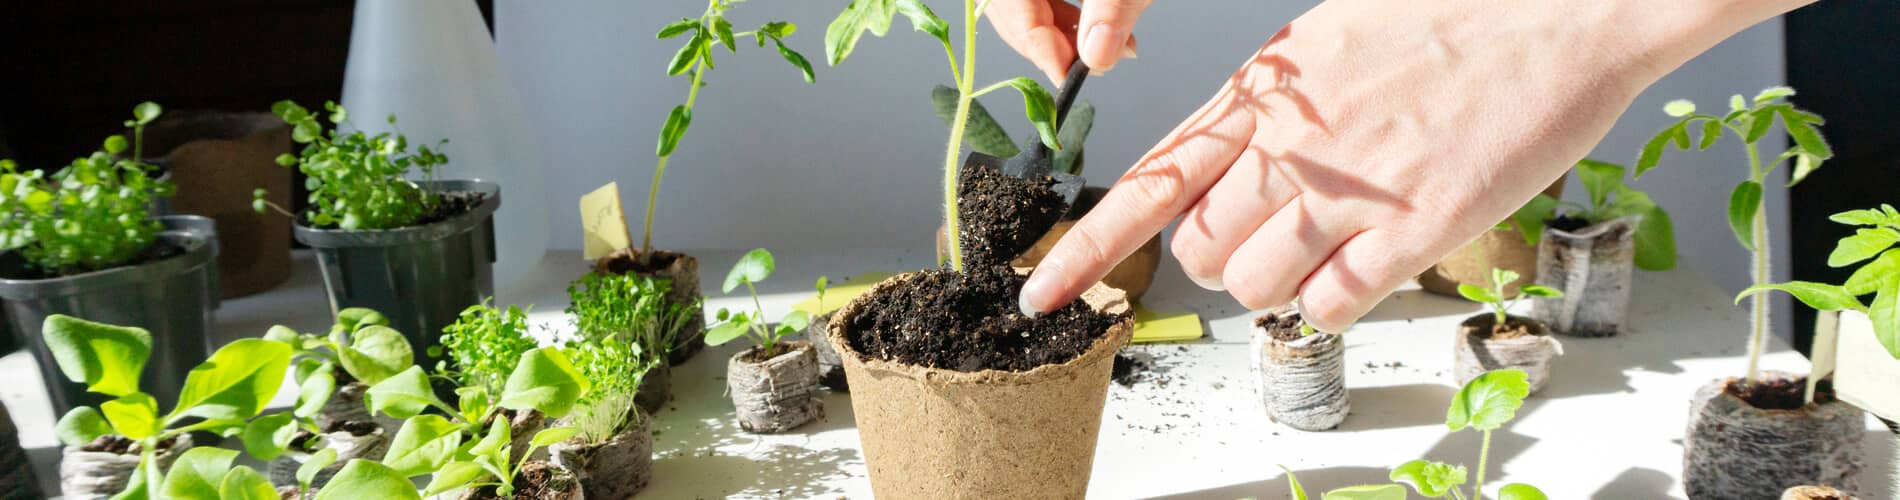 Schutz von Gemüsejungpflanzen vor Schädlingen mit Netzen & Vlies